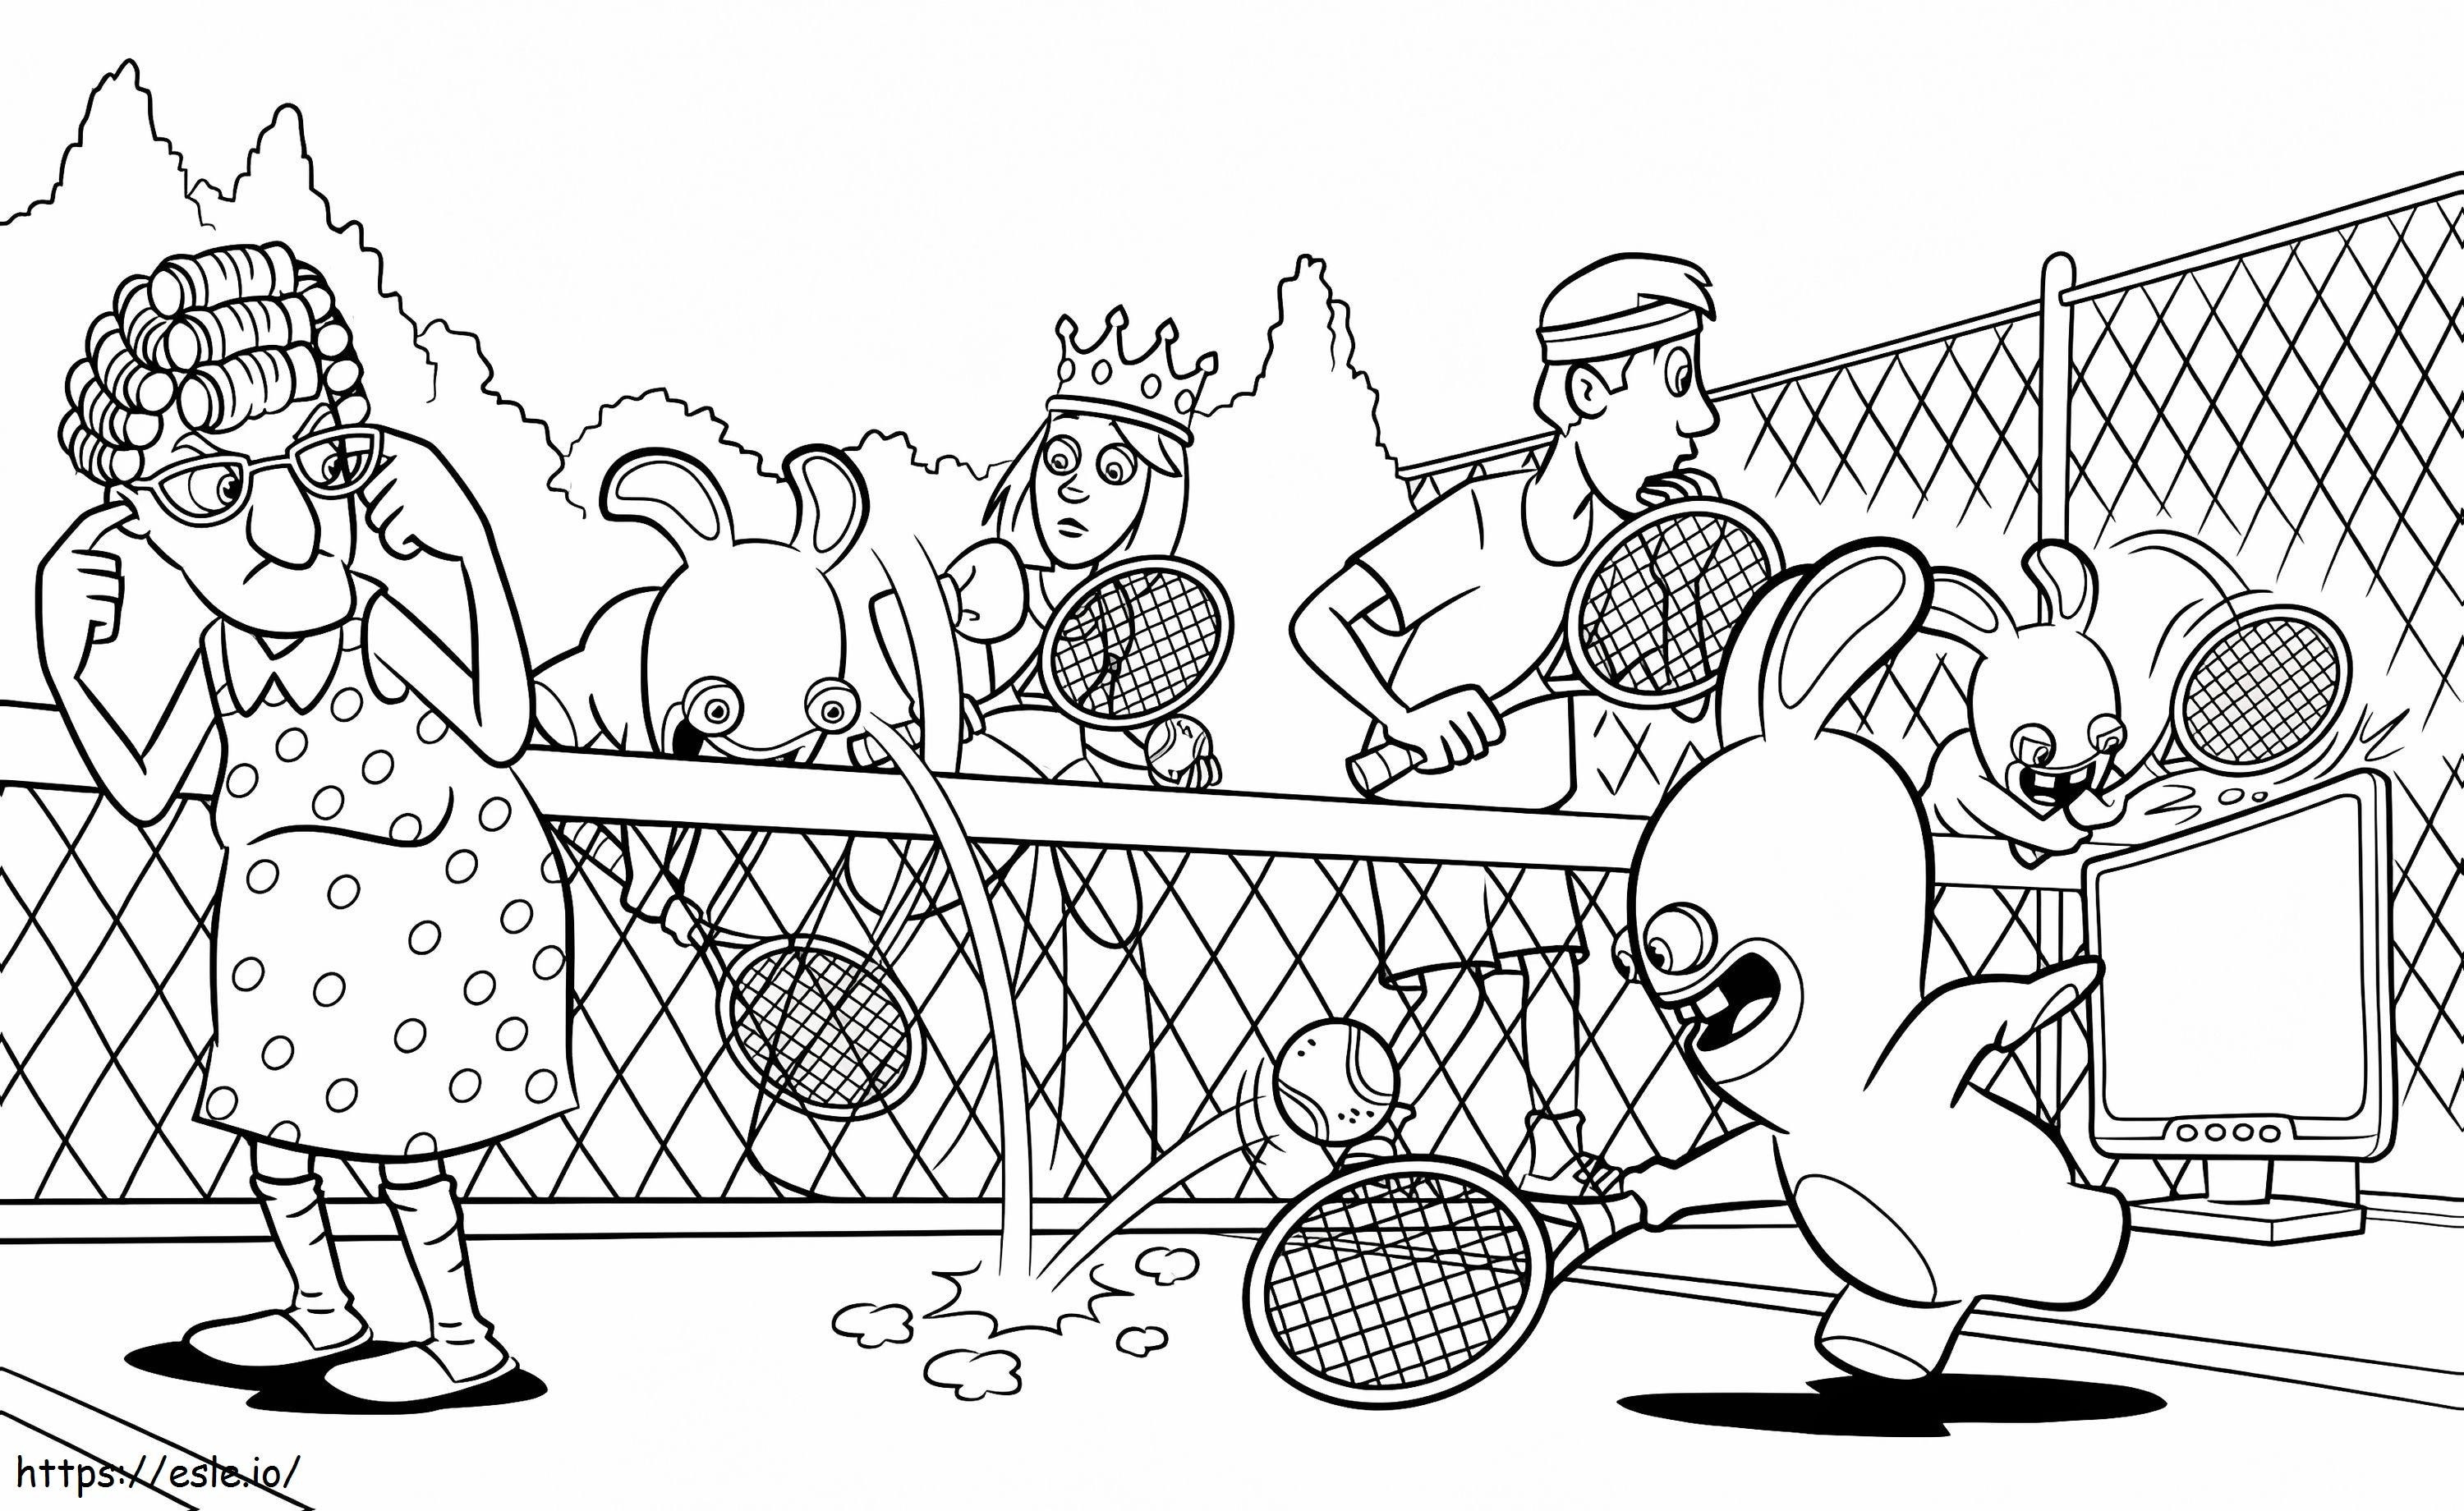 Raving Rabbids spielen Tennis ausmalbilder